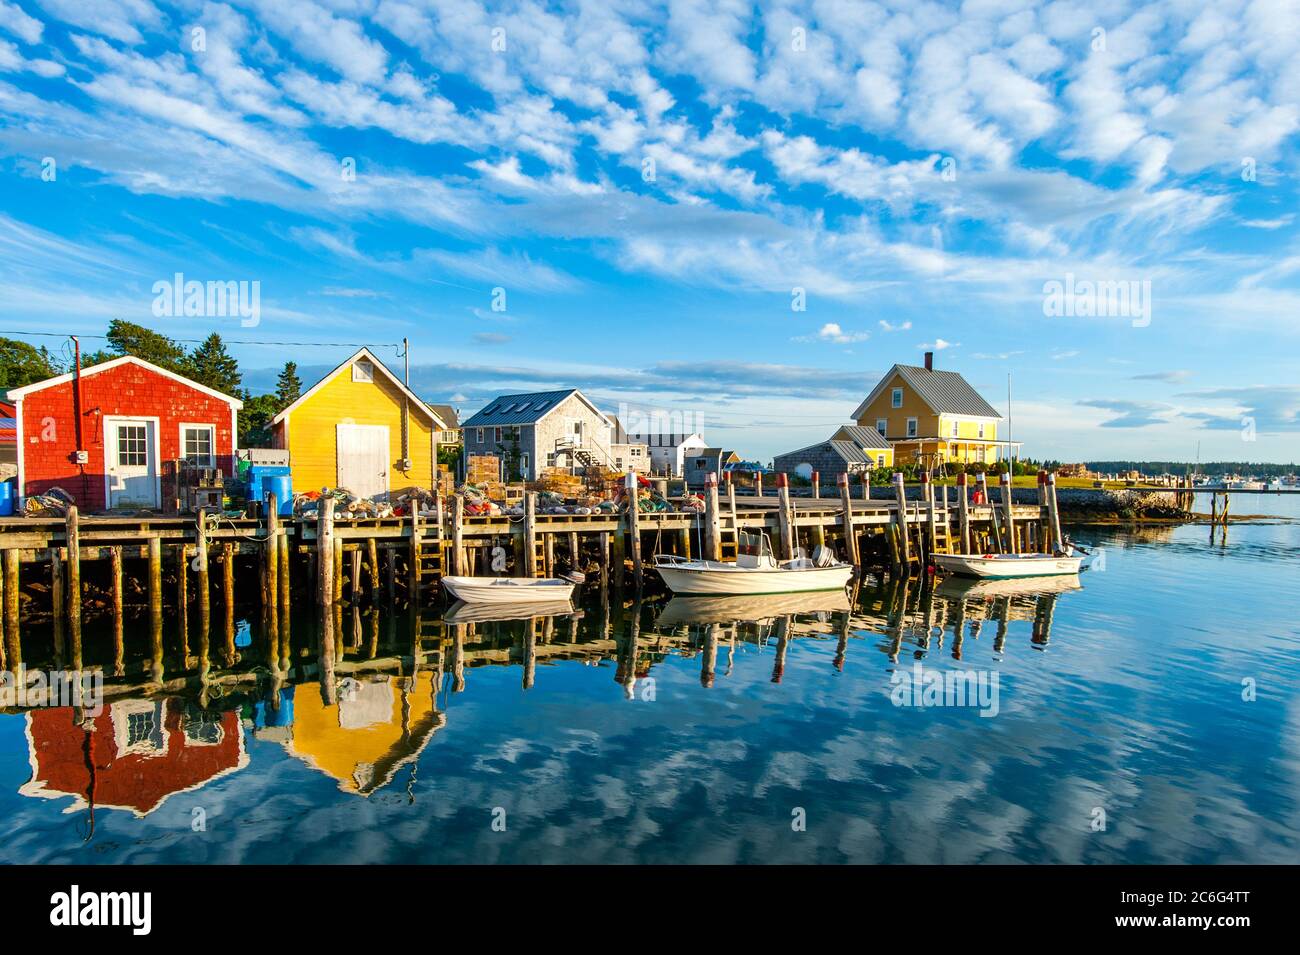 Molo per la pesca con boe di aragoste, trappole e baracche, Carvers Harbour, Vinalhaven, Maine Foto Stock